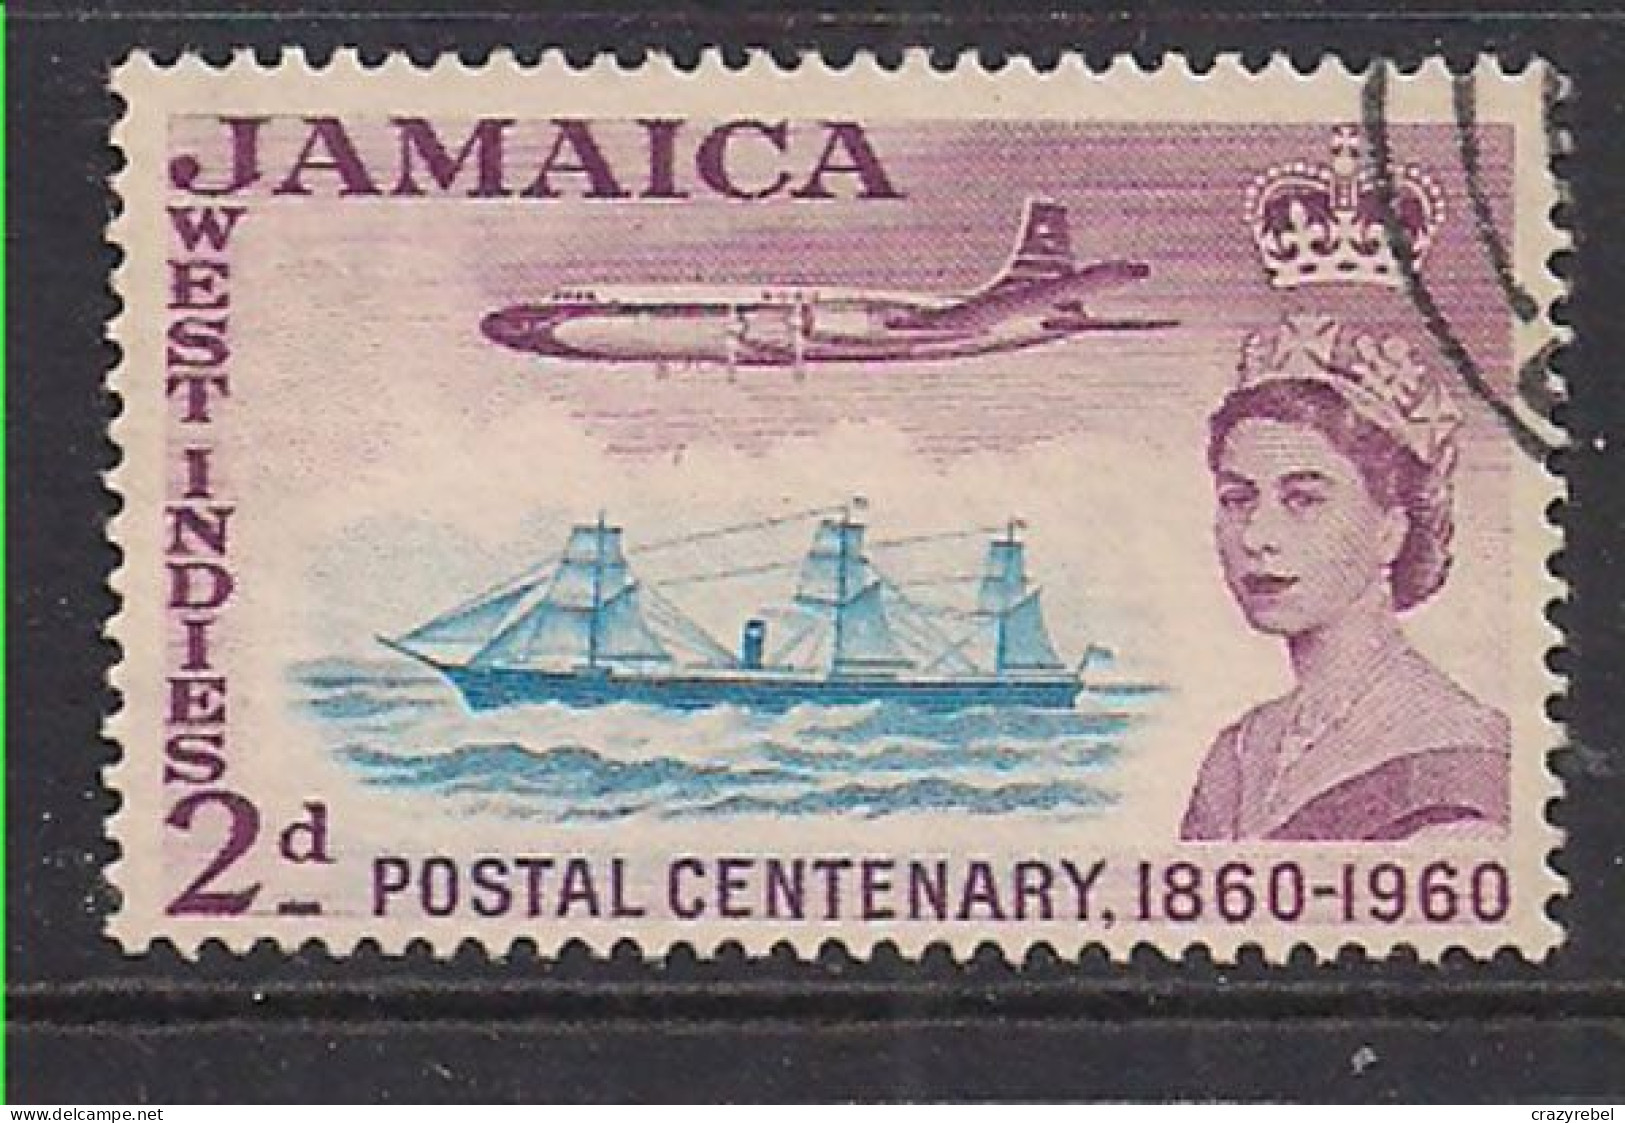 Jamaica 1960 QE2 2d Cent Postage Used SG 178 ( L975 ) - Jamaica (1962-...)